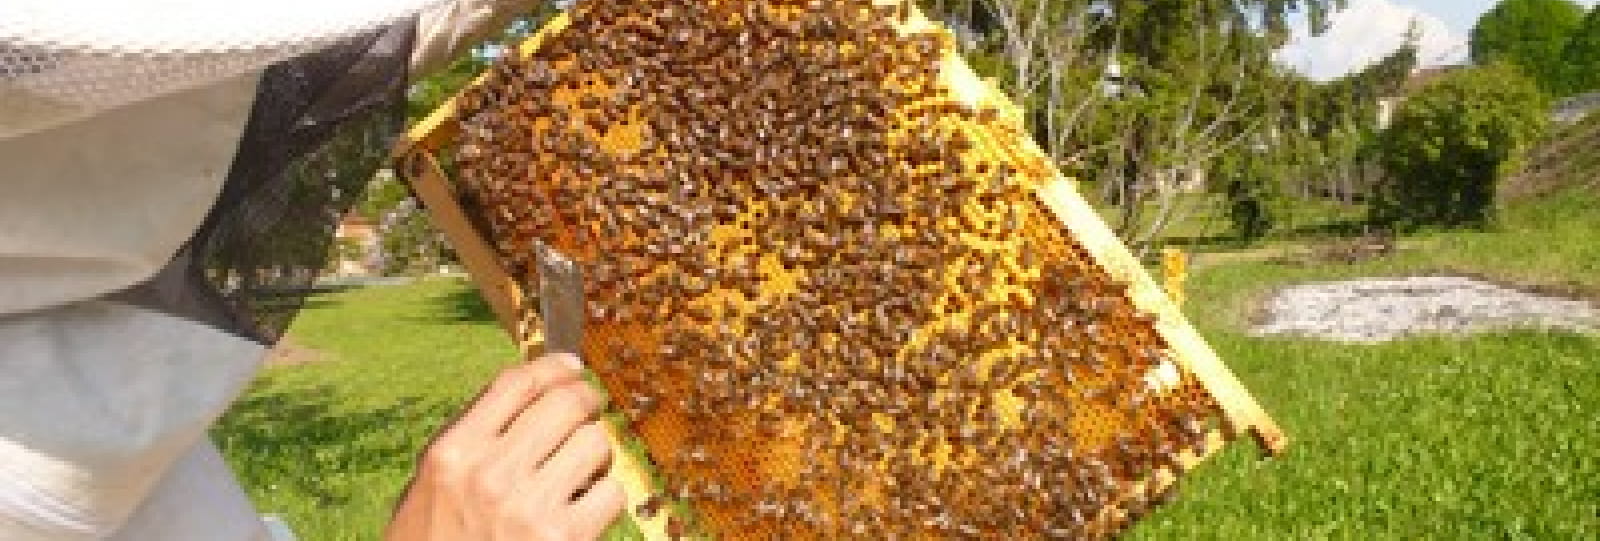 Les ruches de la Bayarde